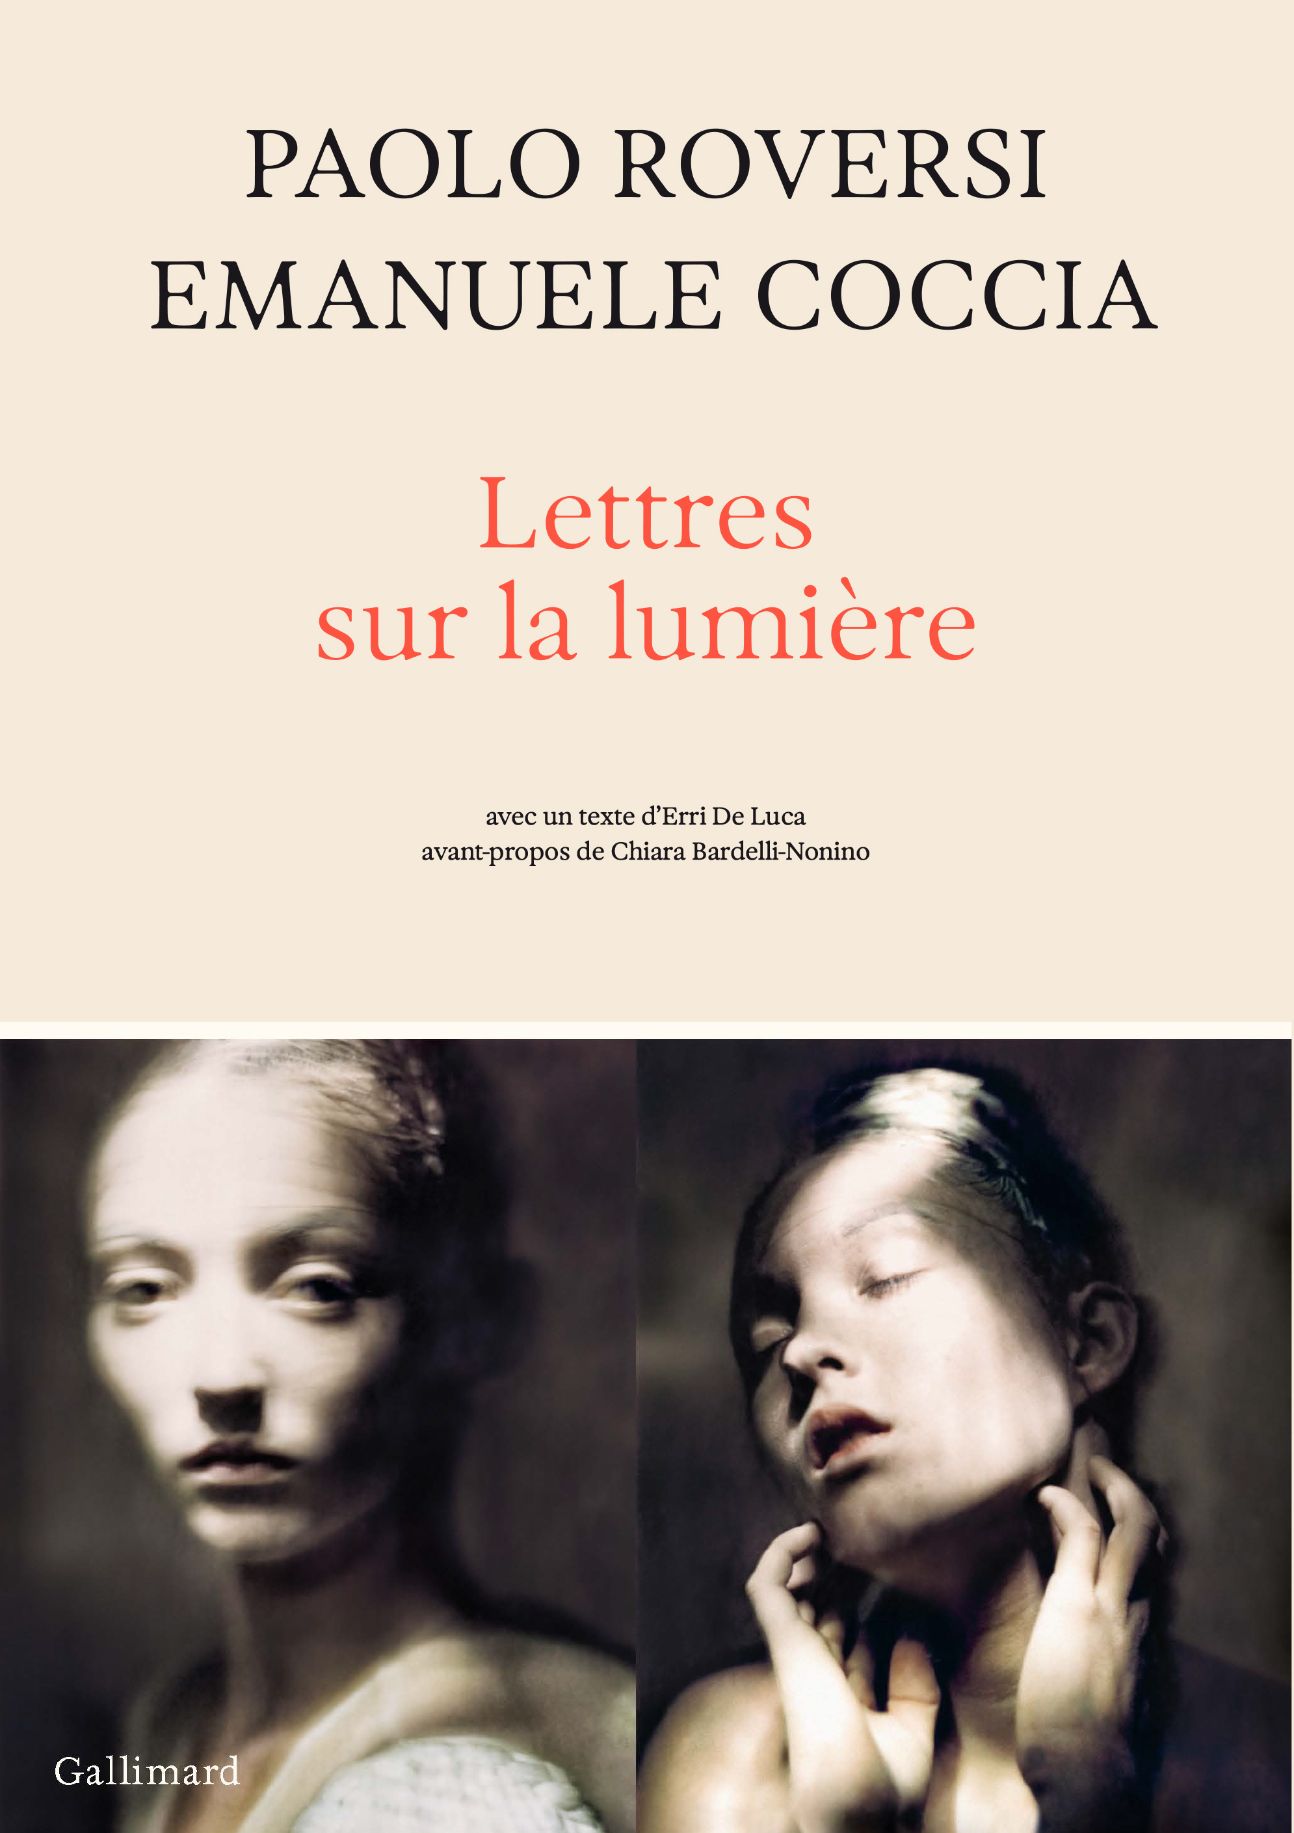 Emanuele Coccia, Paolo Roversi, Lettres sur la lumière